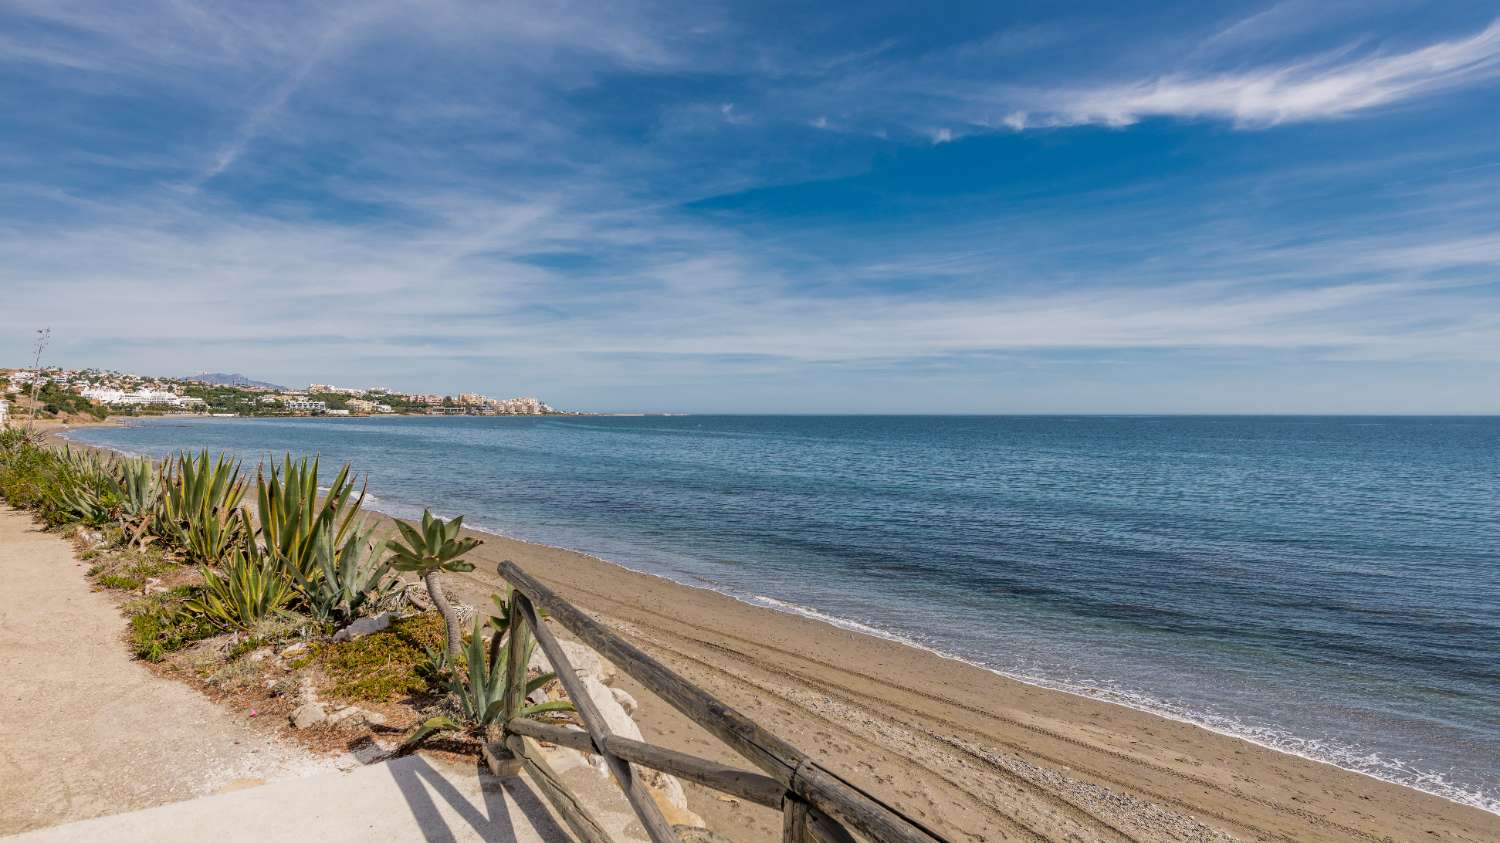 Bella villa ristrutturata con vista sul mare vicino alla spiaggia di Estepona